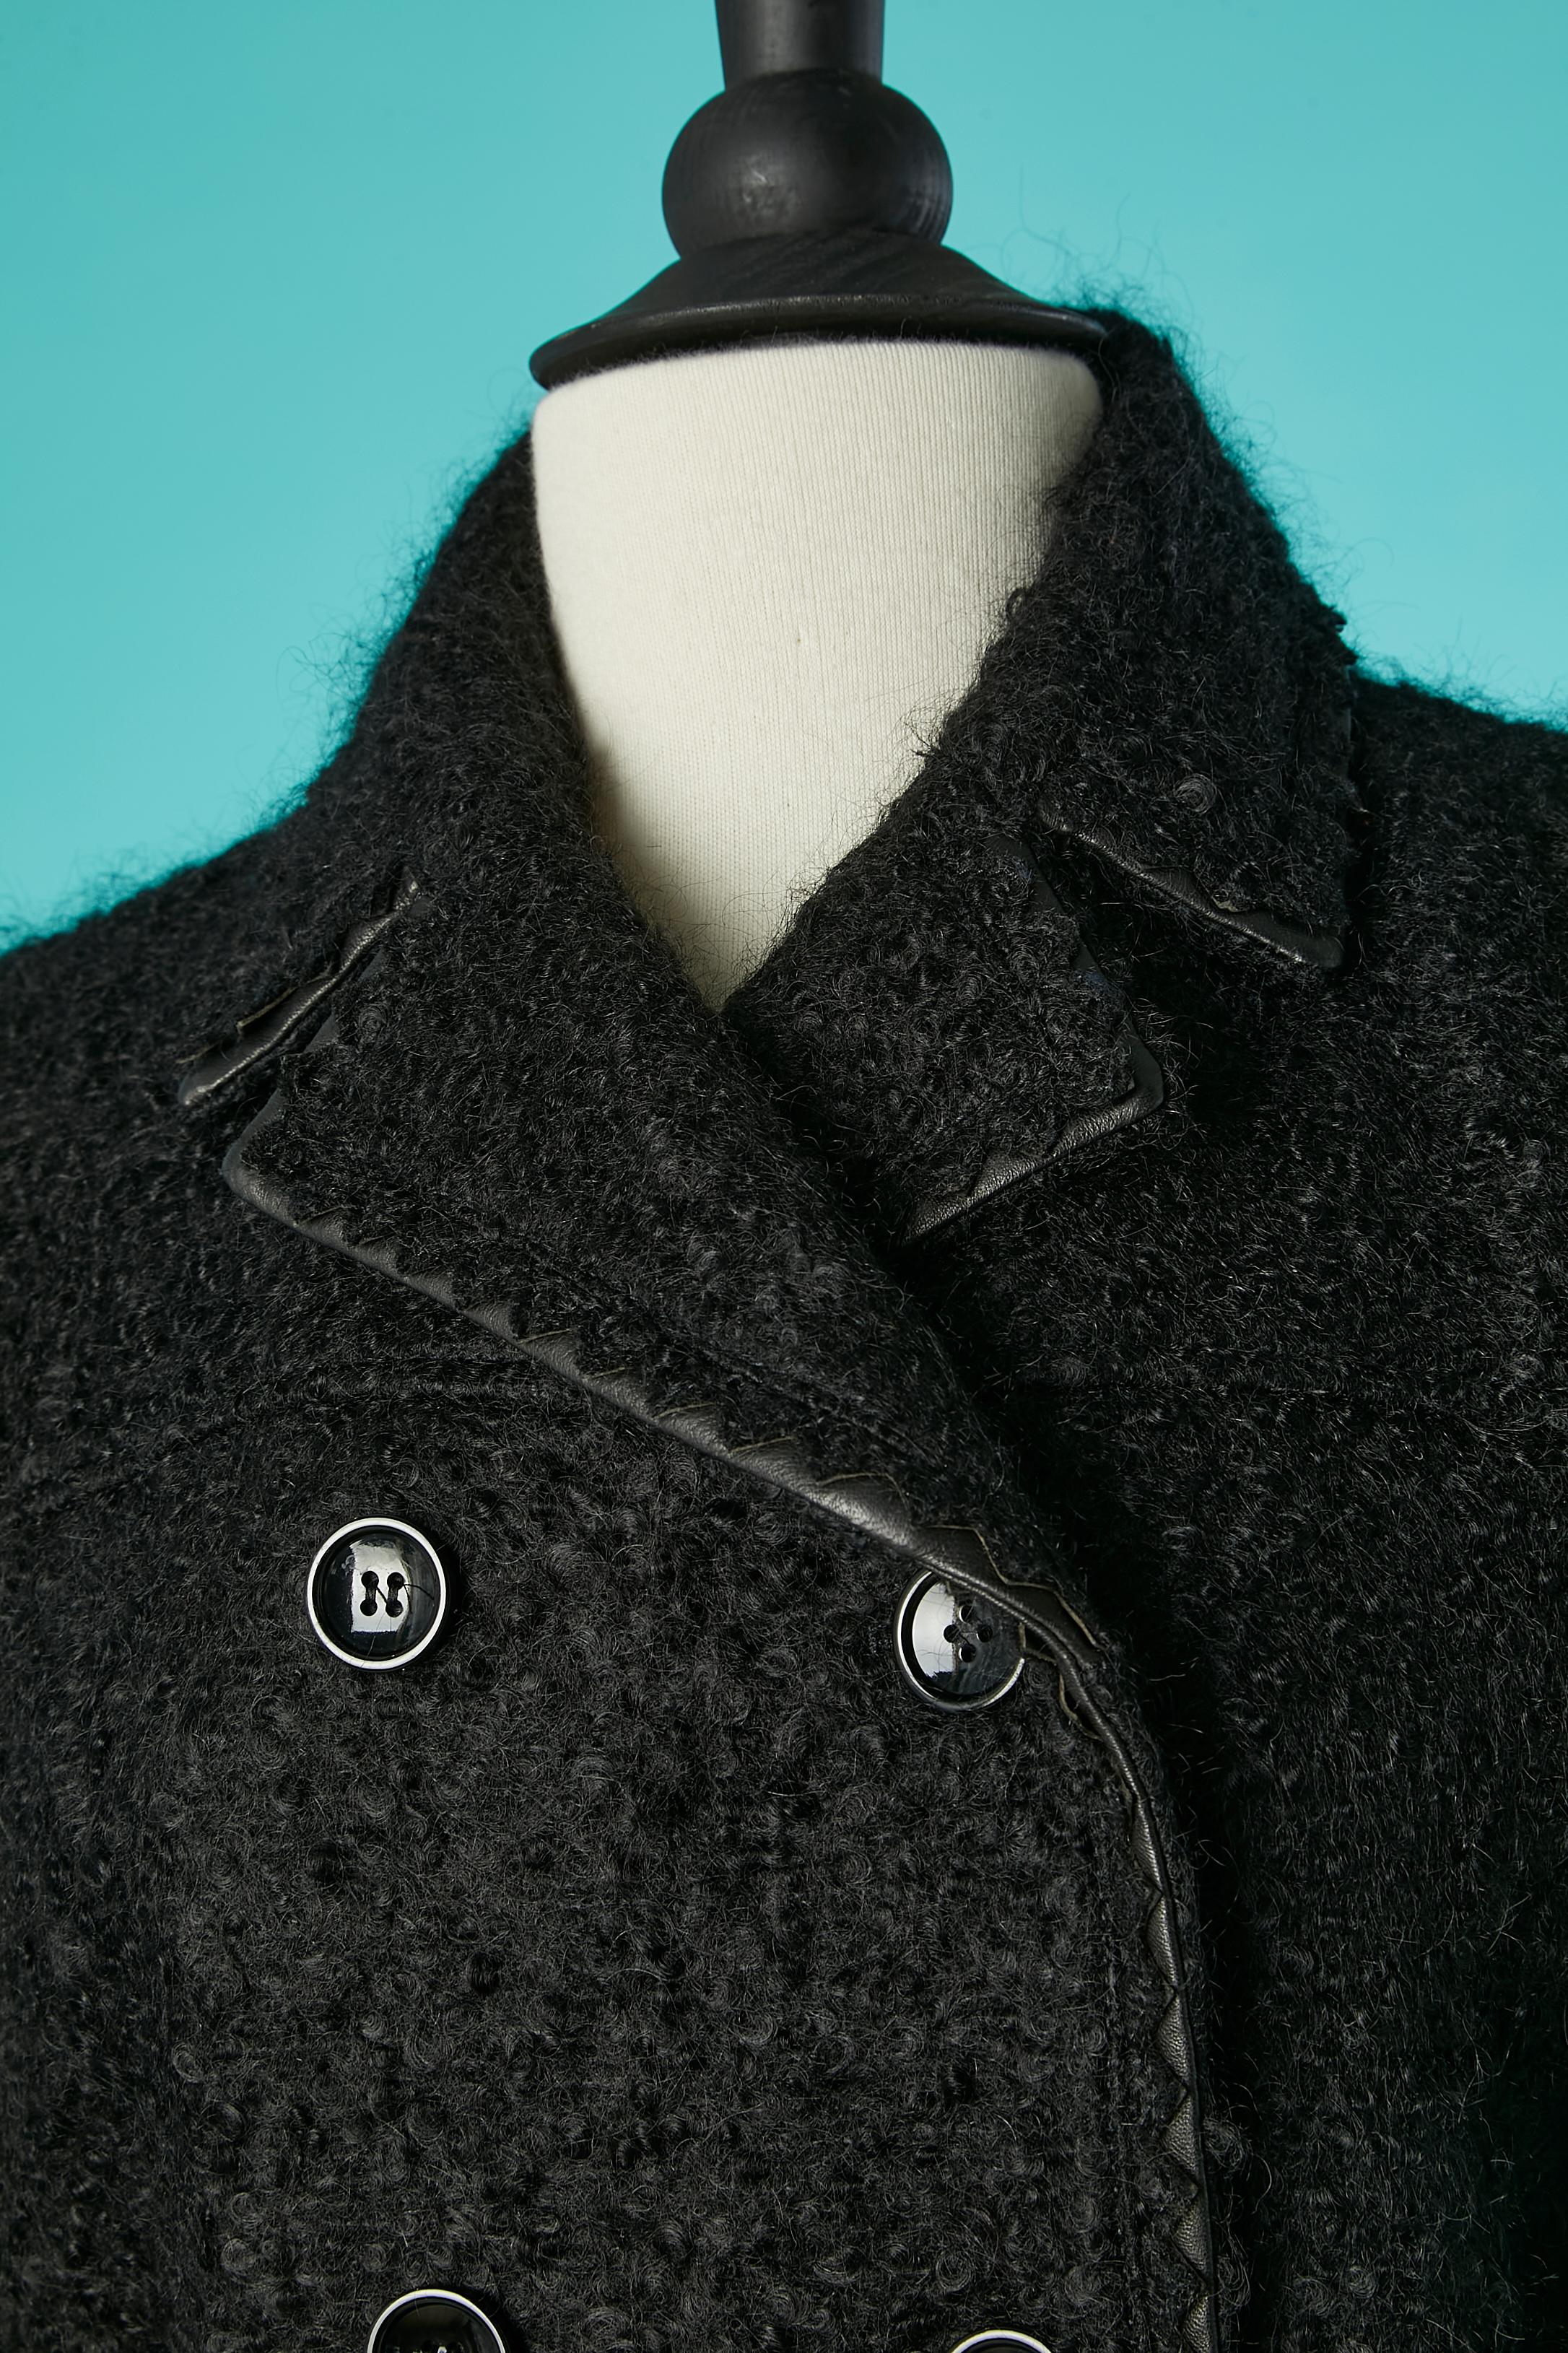 Manteau en laine bouclette noire à double boutonnage avec passepoil en cuir. Composition du tissu : 51% mohair, 41% laine, 7% polyamide, 1% lycra.
Doublure de marque : 65% rayonne, 35% soie. 
Epaule fine. Ceinture et boucle. Poches. 
TAILLE 44 (It)